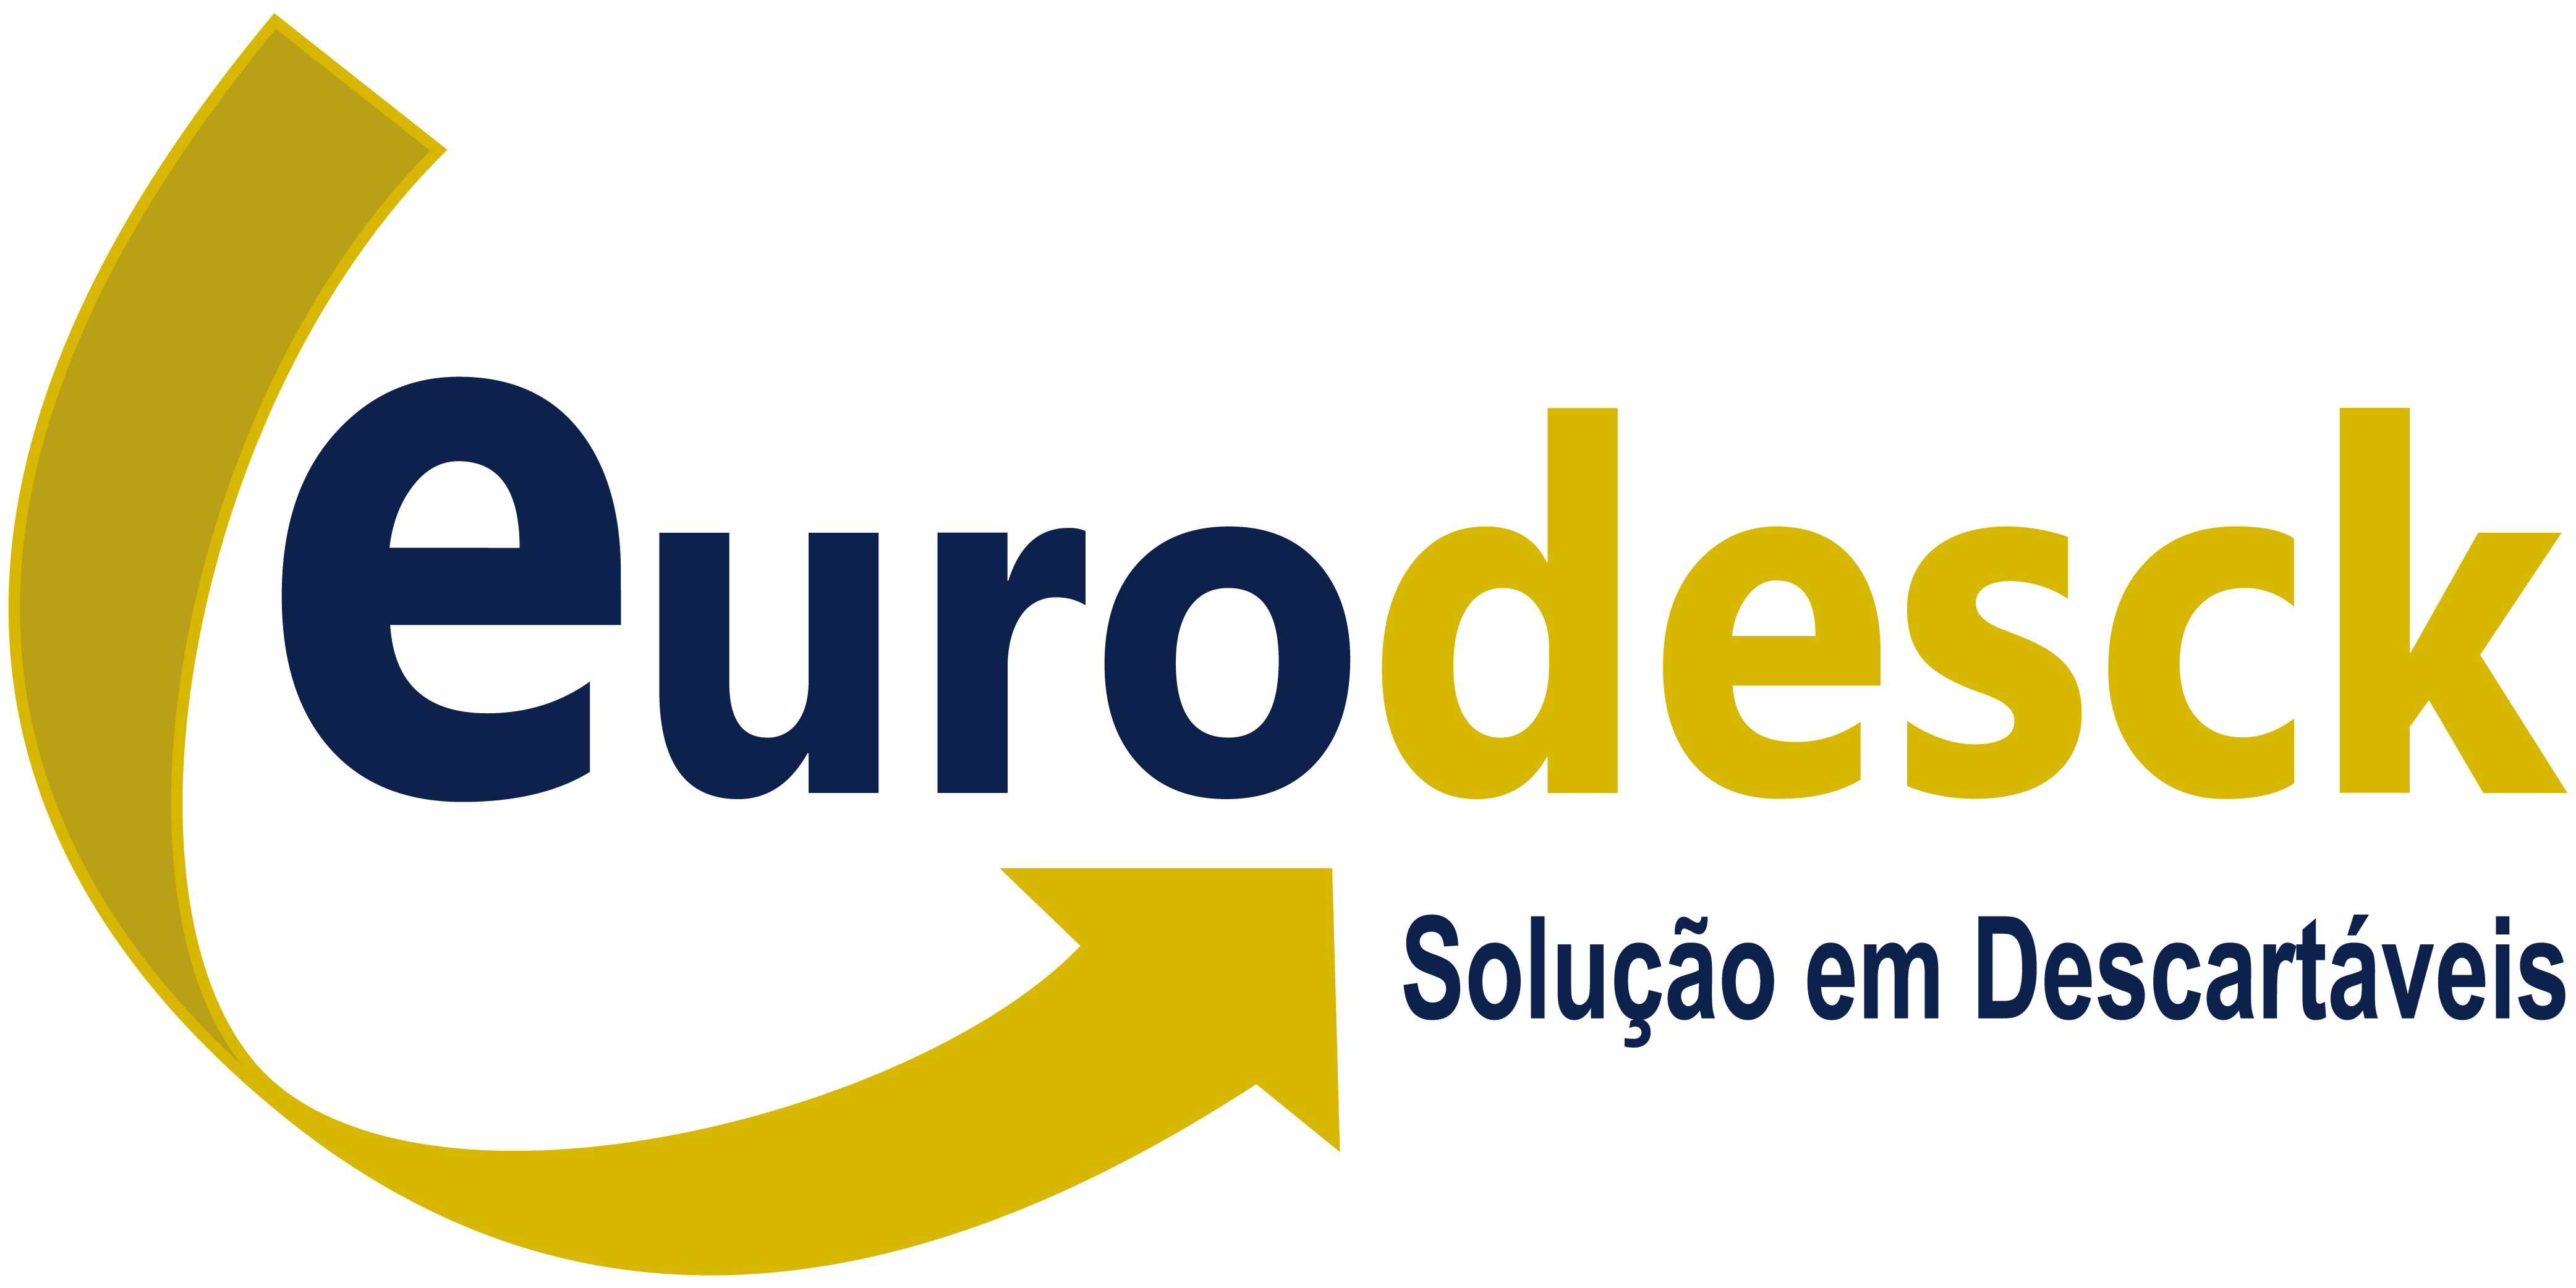 eurodesck